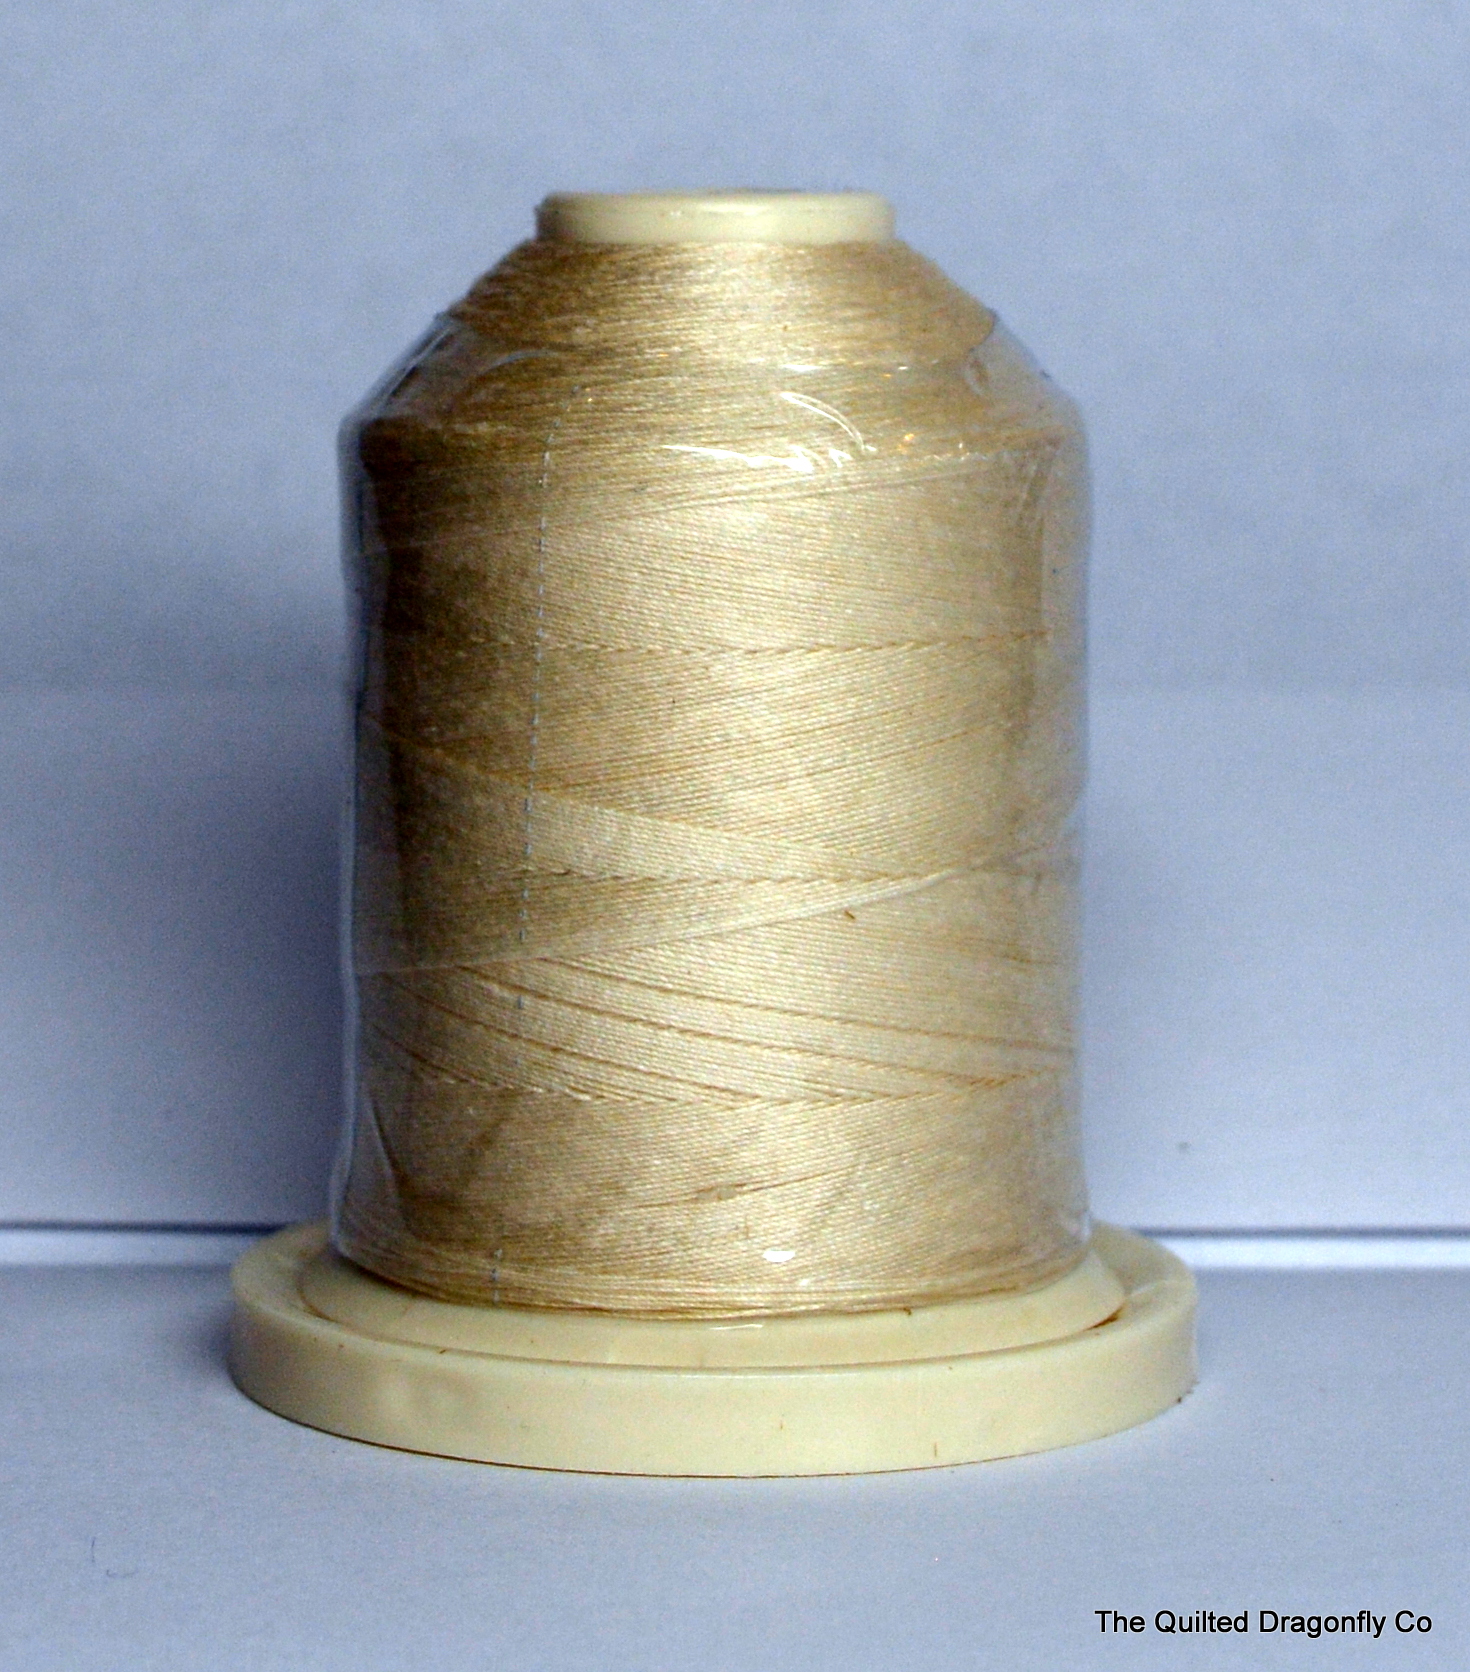 Signature Thread 40 Cotton - Parchment